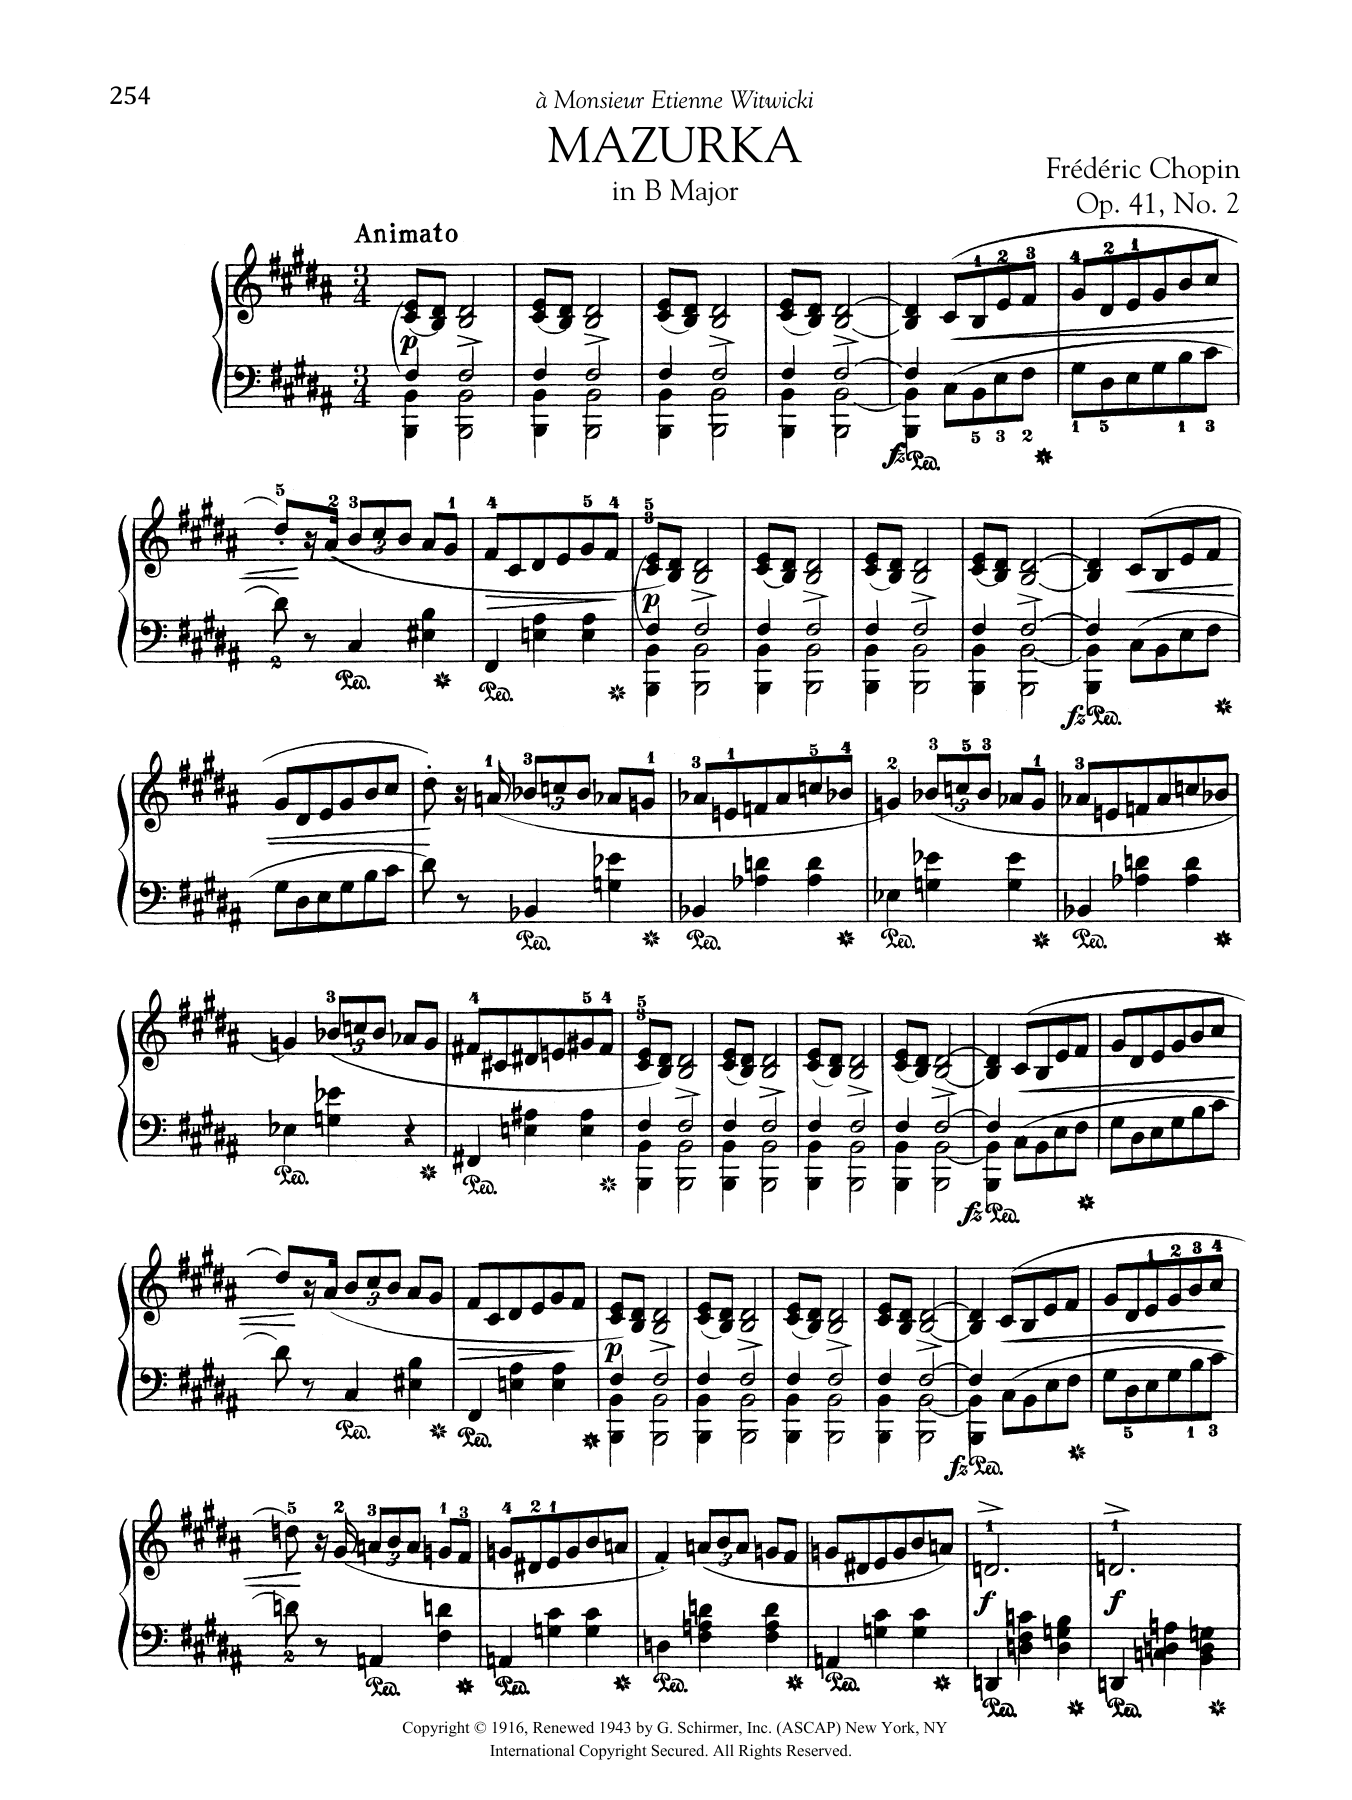 Download Frederic Chopin Mazurka in B Major, Op. 41, No. 2 Sheet Music